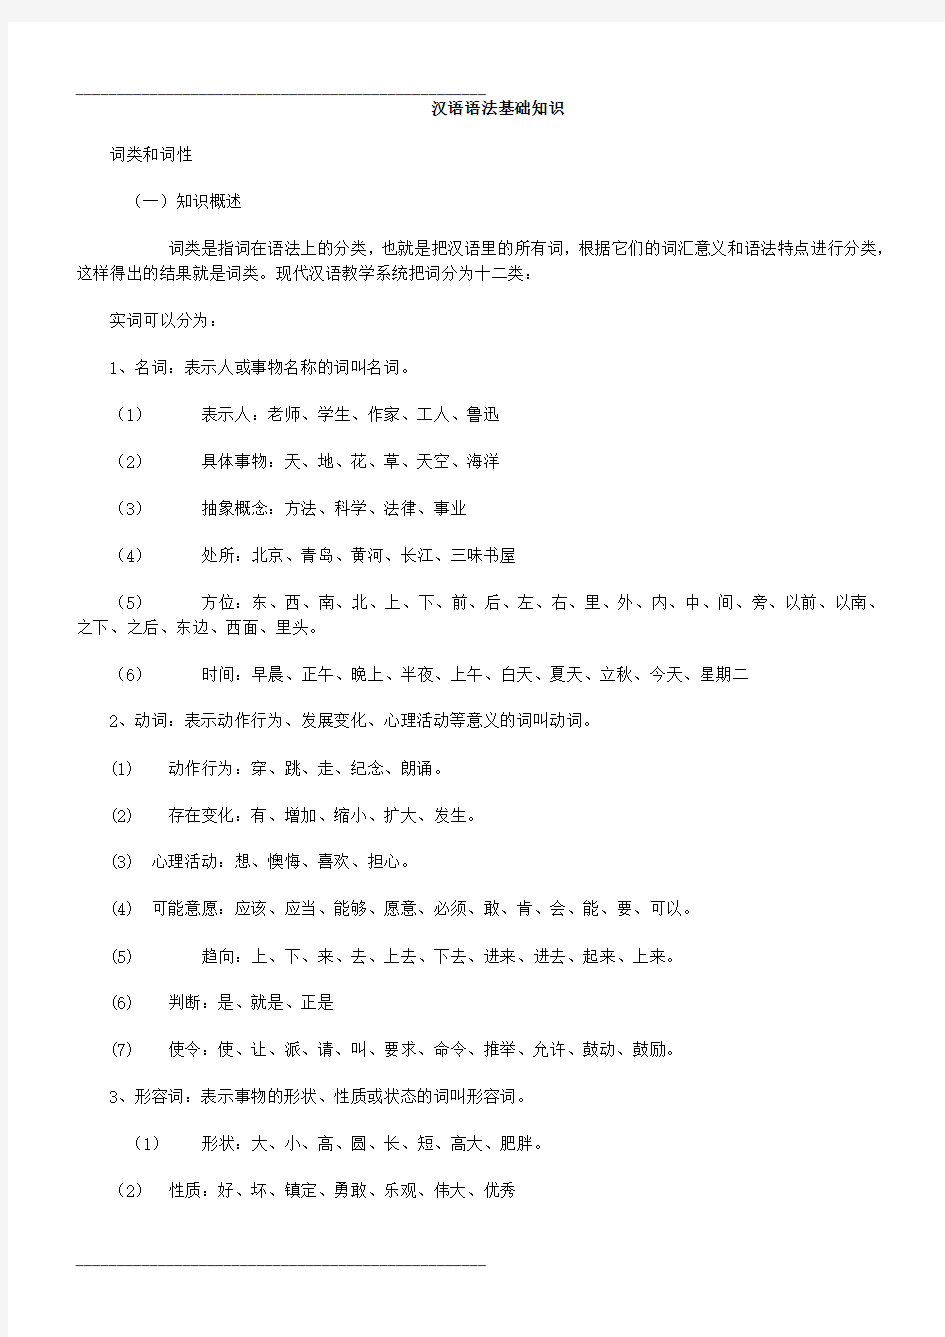 汉语语法基础知识(完整版)